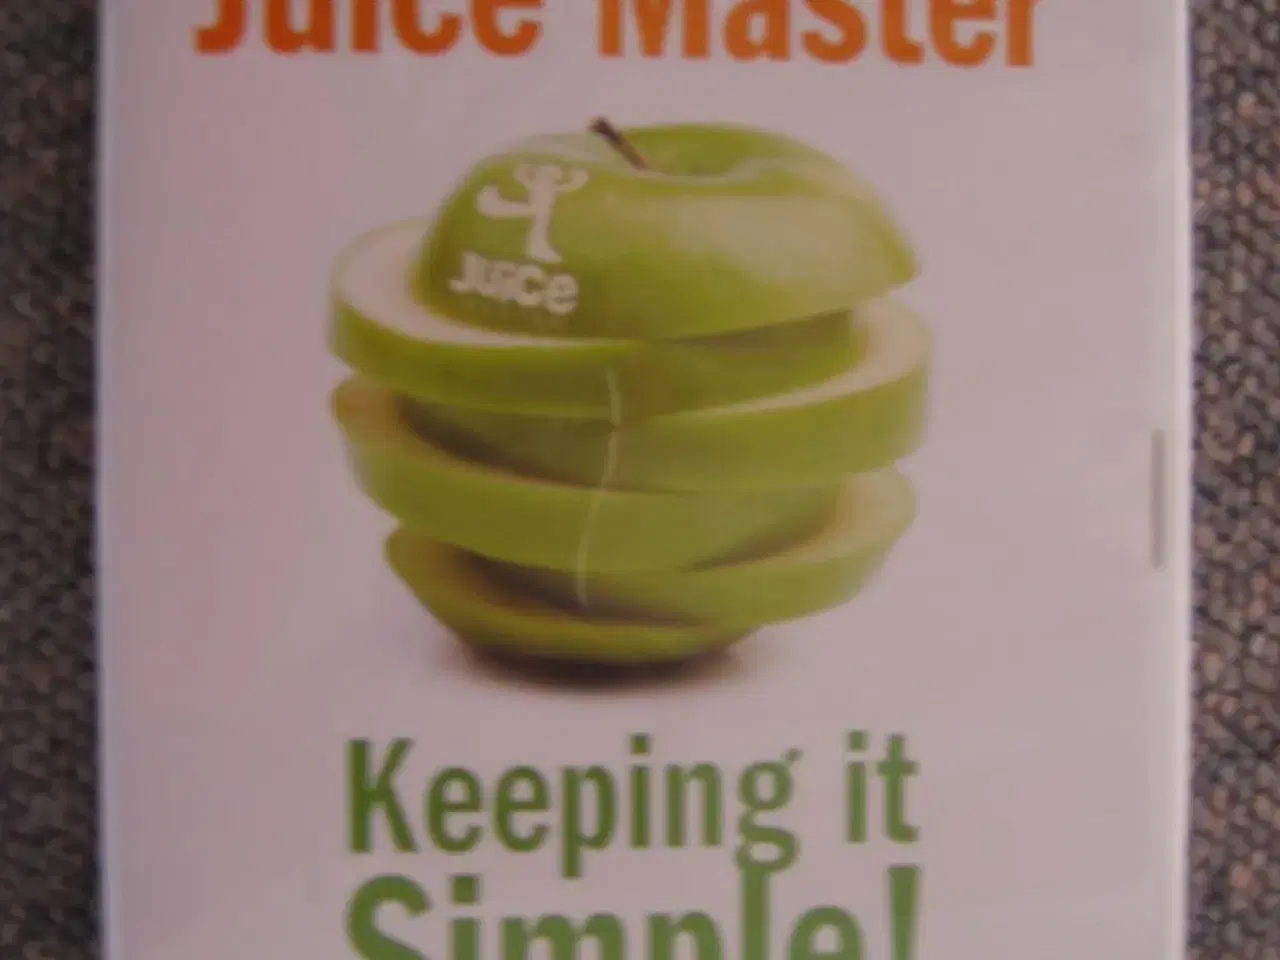 Billede 1 - The Juice Master